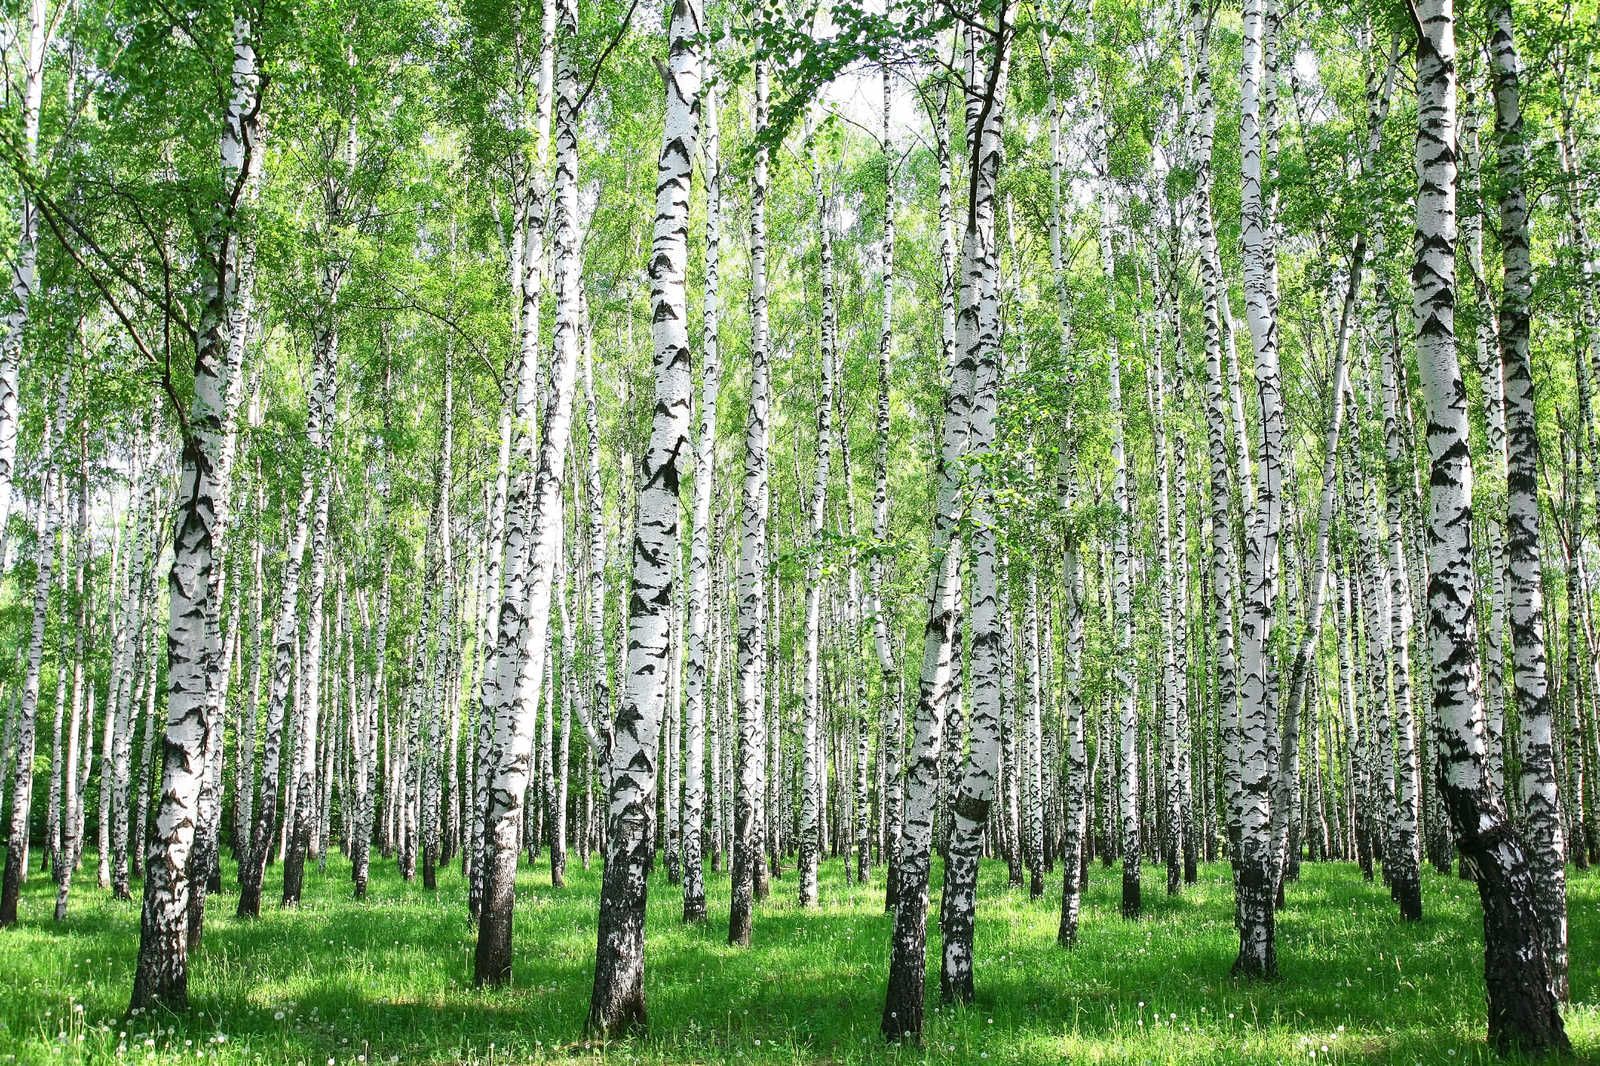             Toile Paysage Forêt de bouleaux de jour - 0,90 m x 0,60 m
        